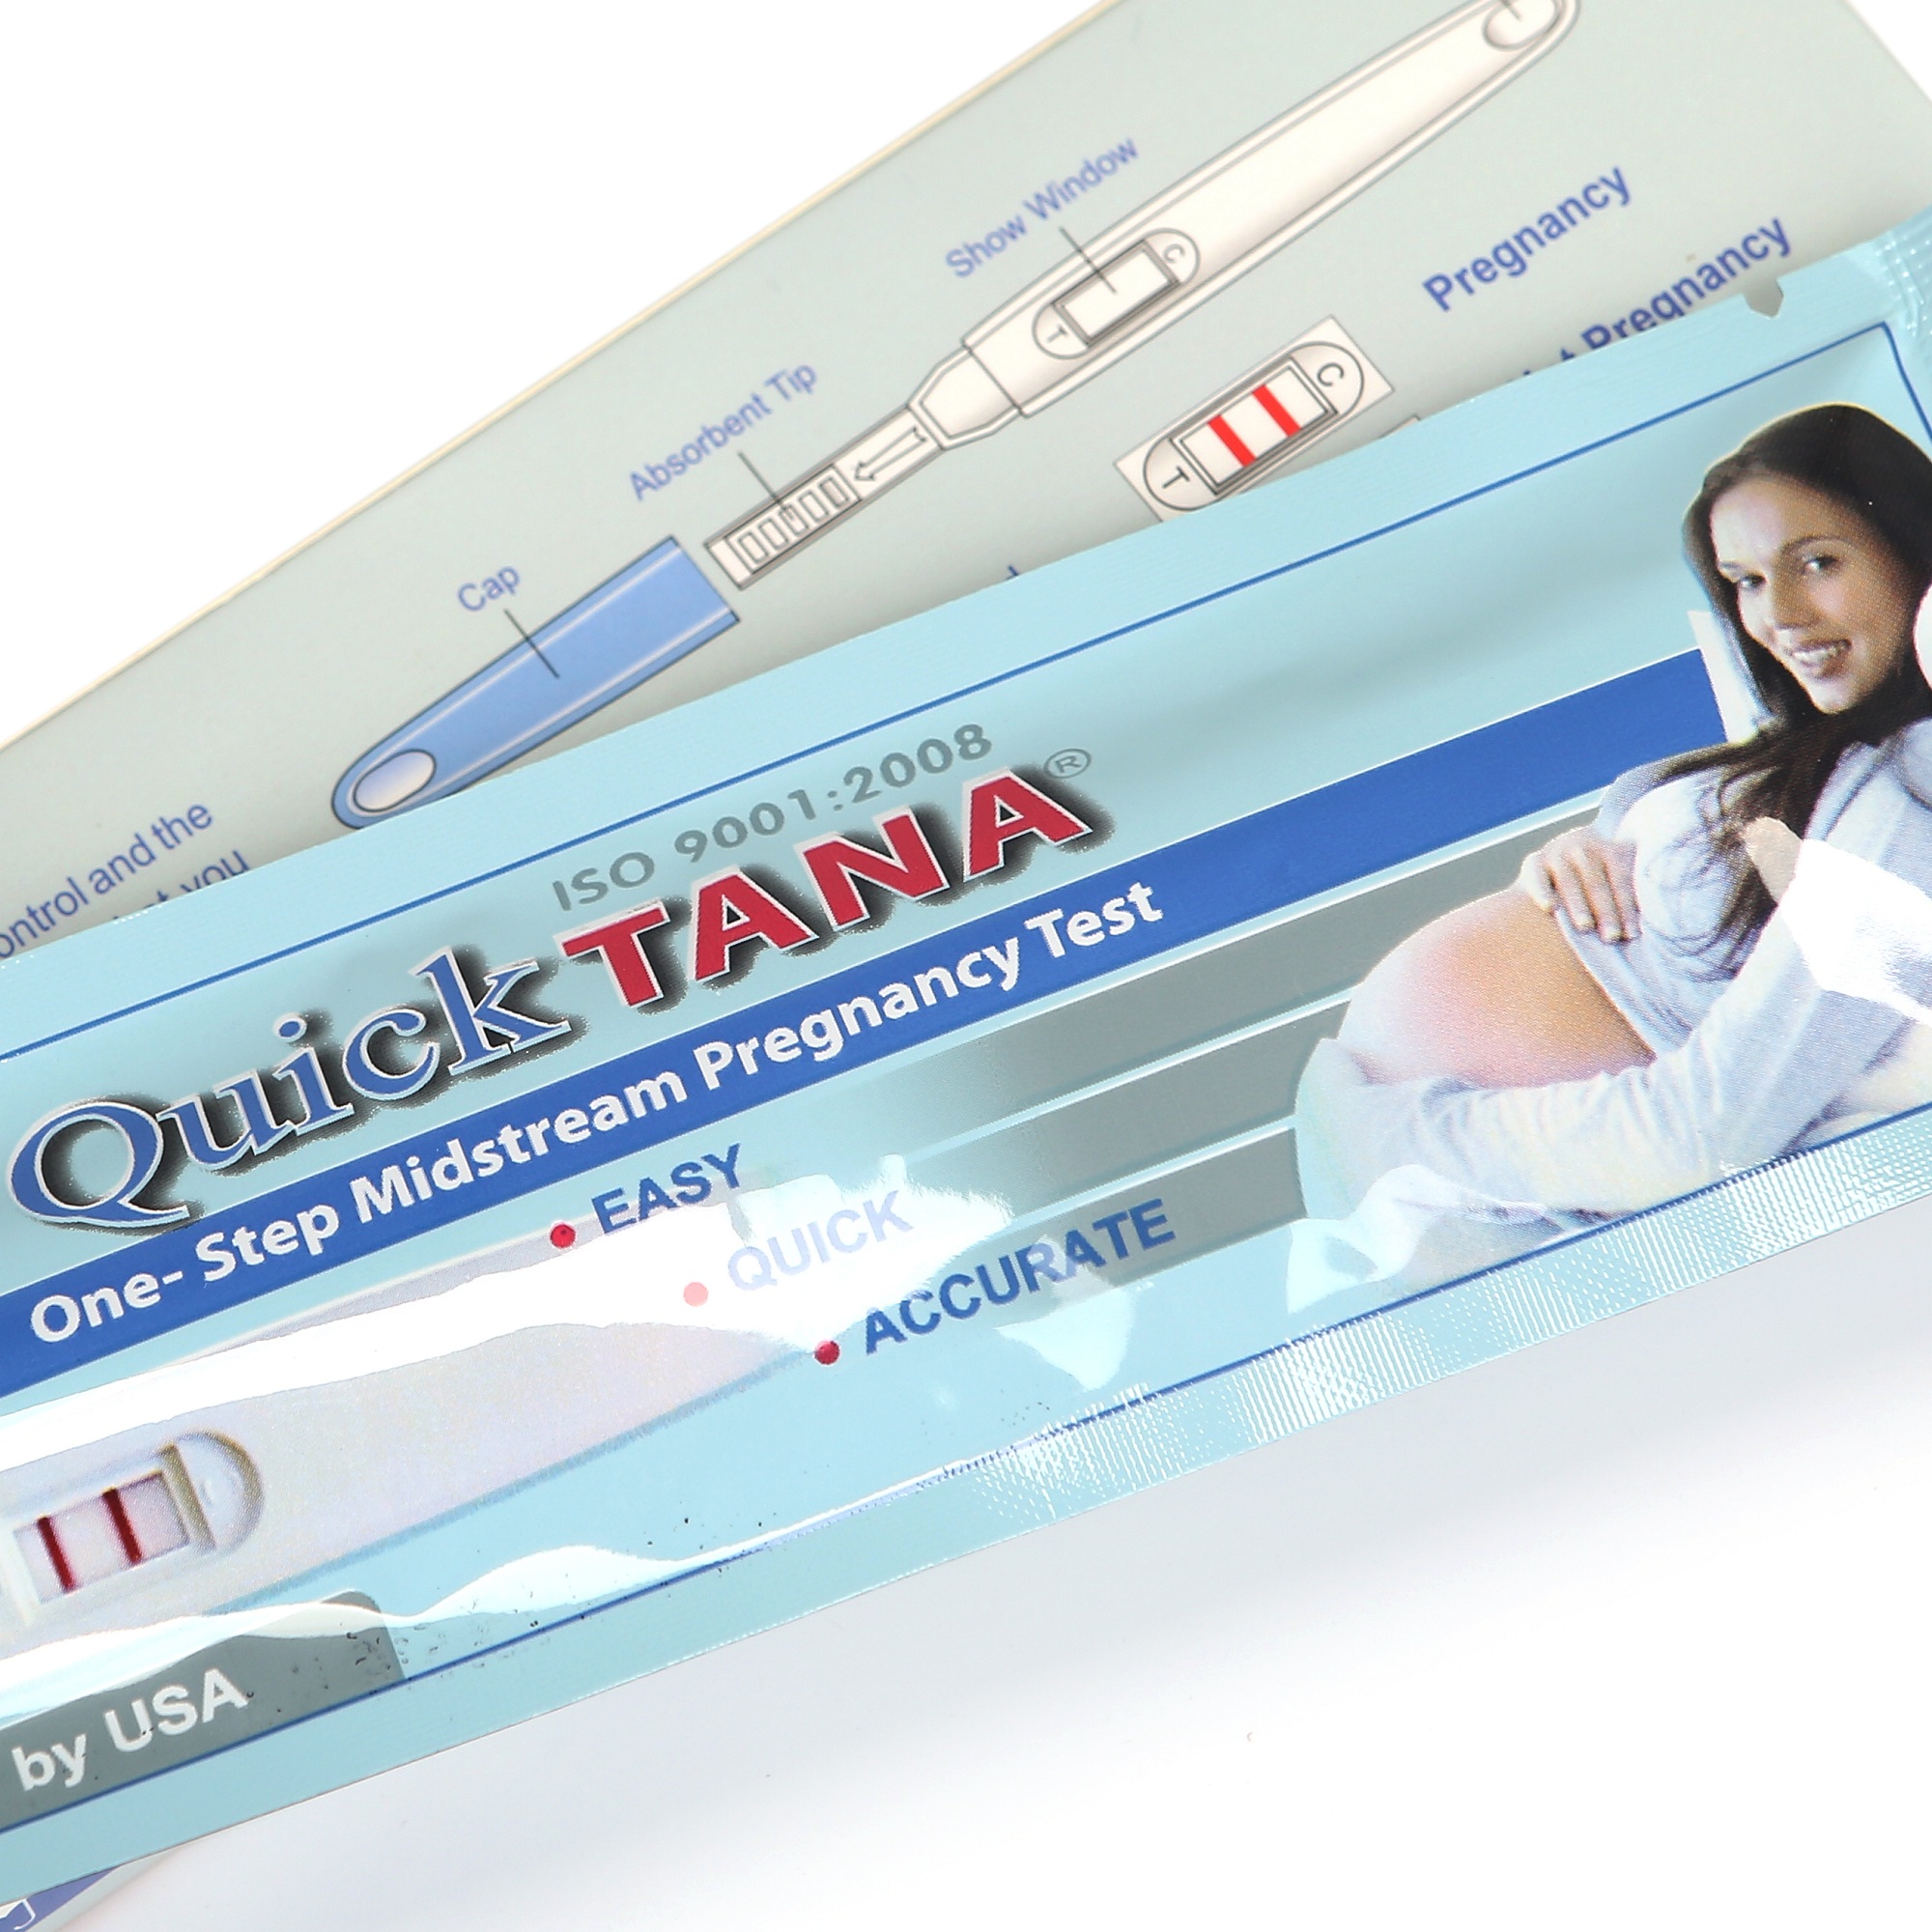 Bút thử thai Quicktana phát hiện thai sớm cho kết quả chính xác, nhanh và đảm bảo - Hộp 1 bút